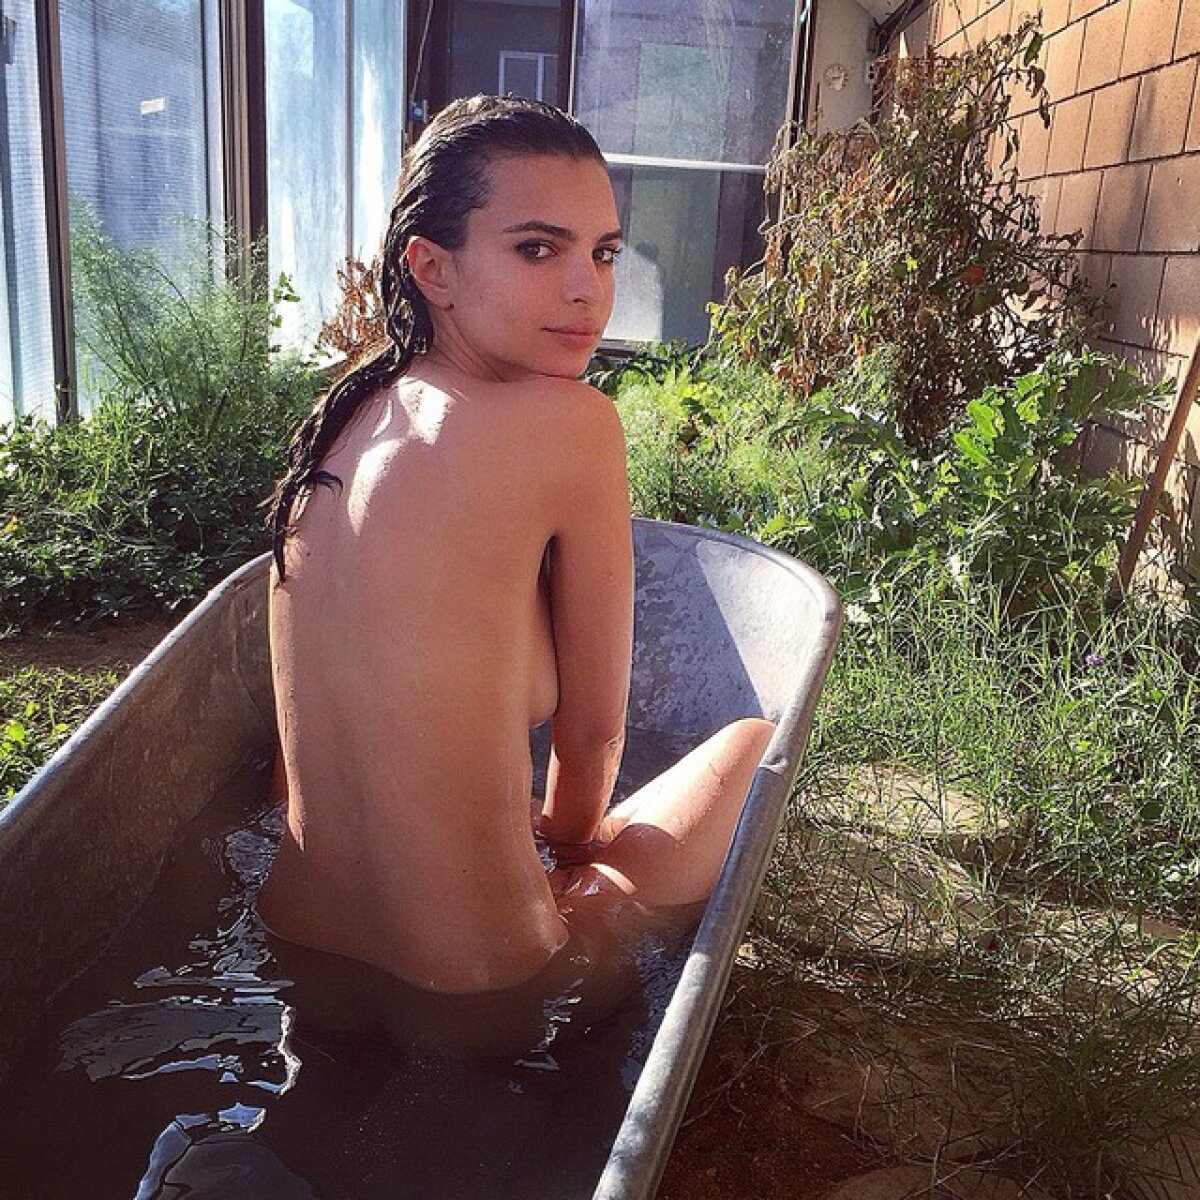 FOTO Nudul care provoacă » Emily Ratajkowski își dezvăluie complet formele pe Instagram: iată ”sânii cei mai frumoși din lume”